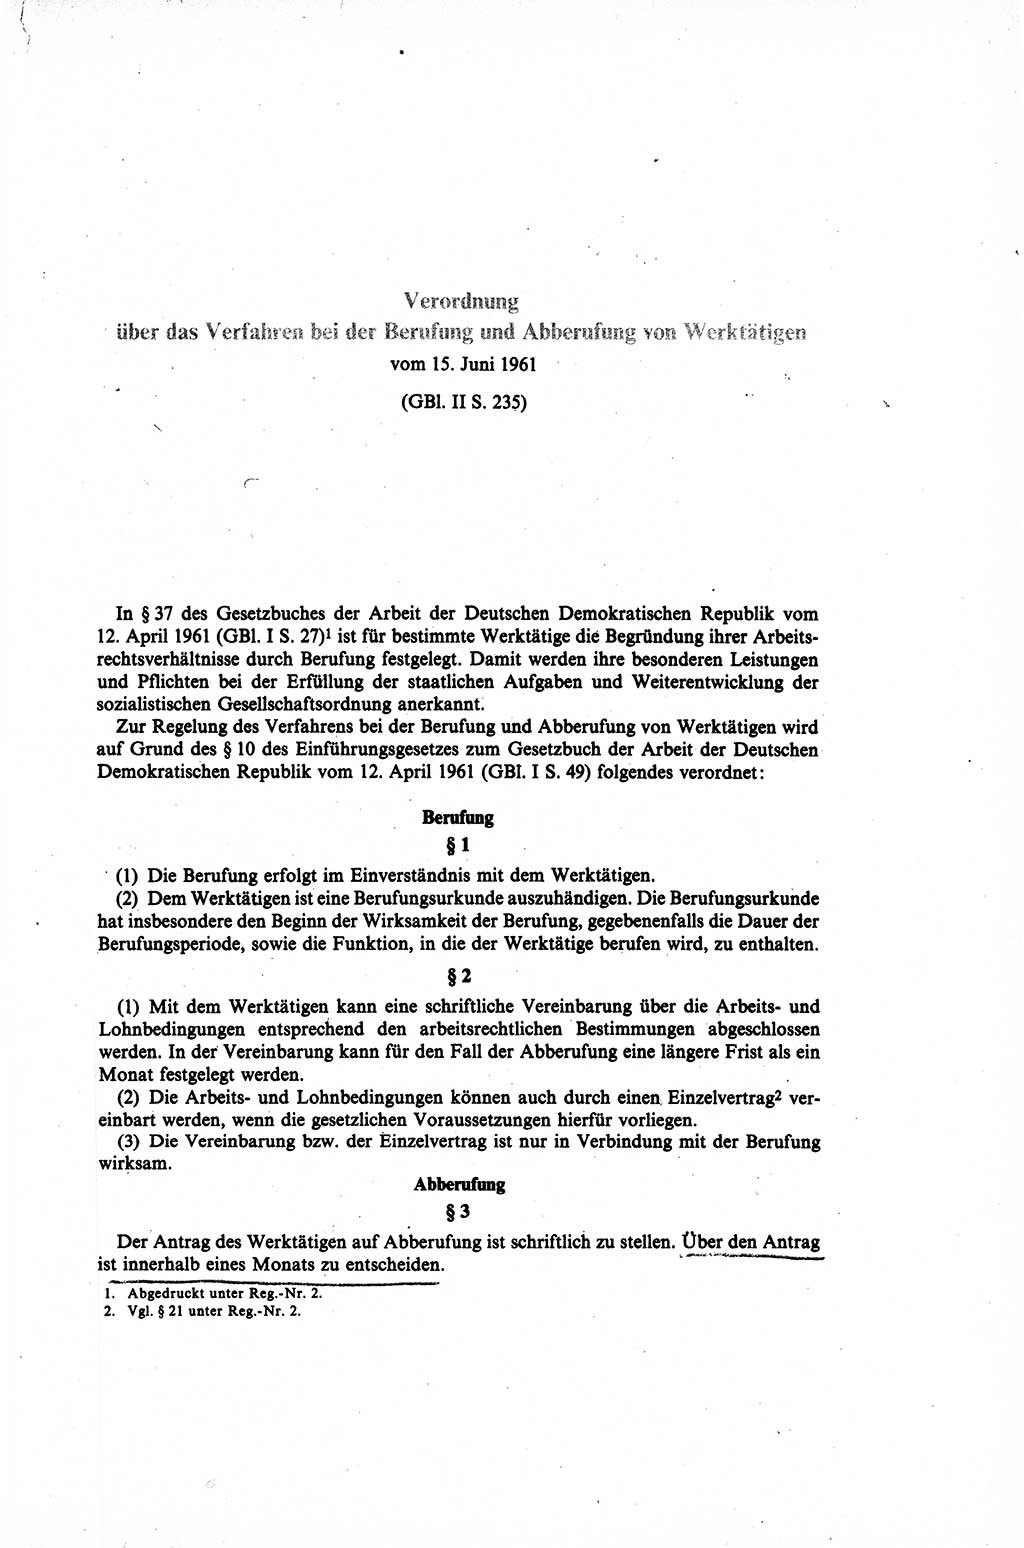 Gesetzbuch der Arbeit (GBA) und andere ausgewählte rechtliche Bestimmungen [Deutsche Demokratische Republik (DDR)] 1968, Seite 187 (GBA DDR 1968, S. 187)